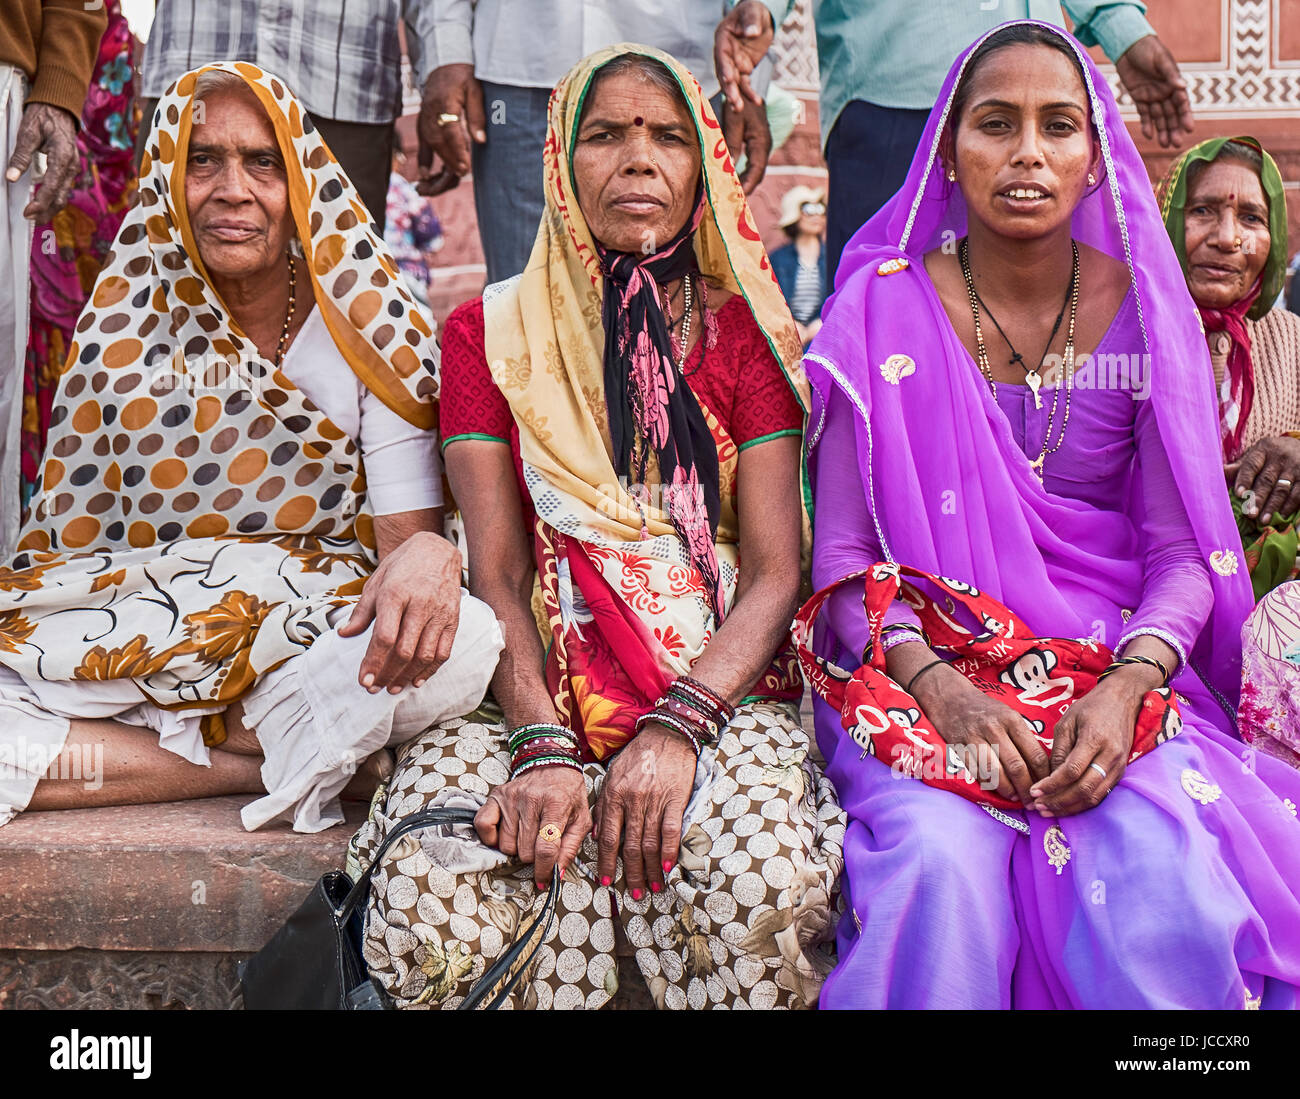 AGRA, Indien - 19. November 2016: Drei Frauen in bunten Saris und Hijabs sitzen am Eingang in das große Tor des Taj Mahal in Agra, Indien Stockfoto